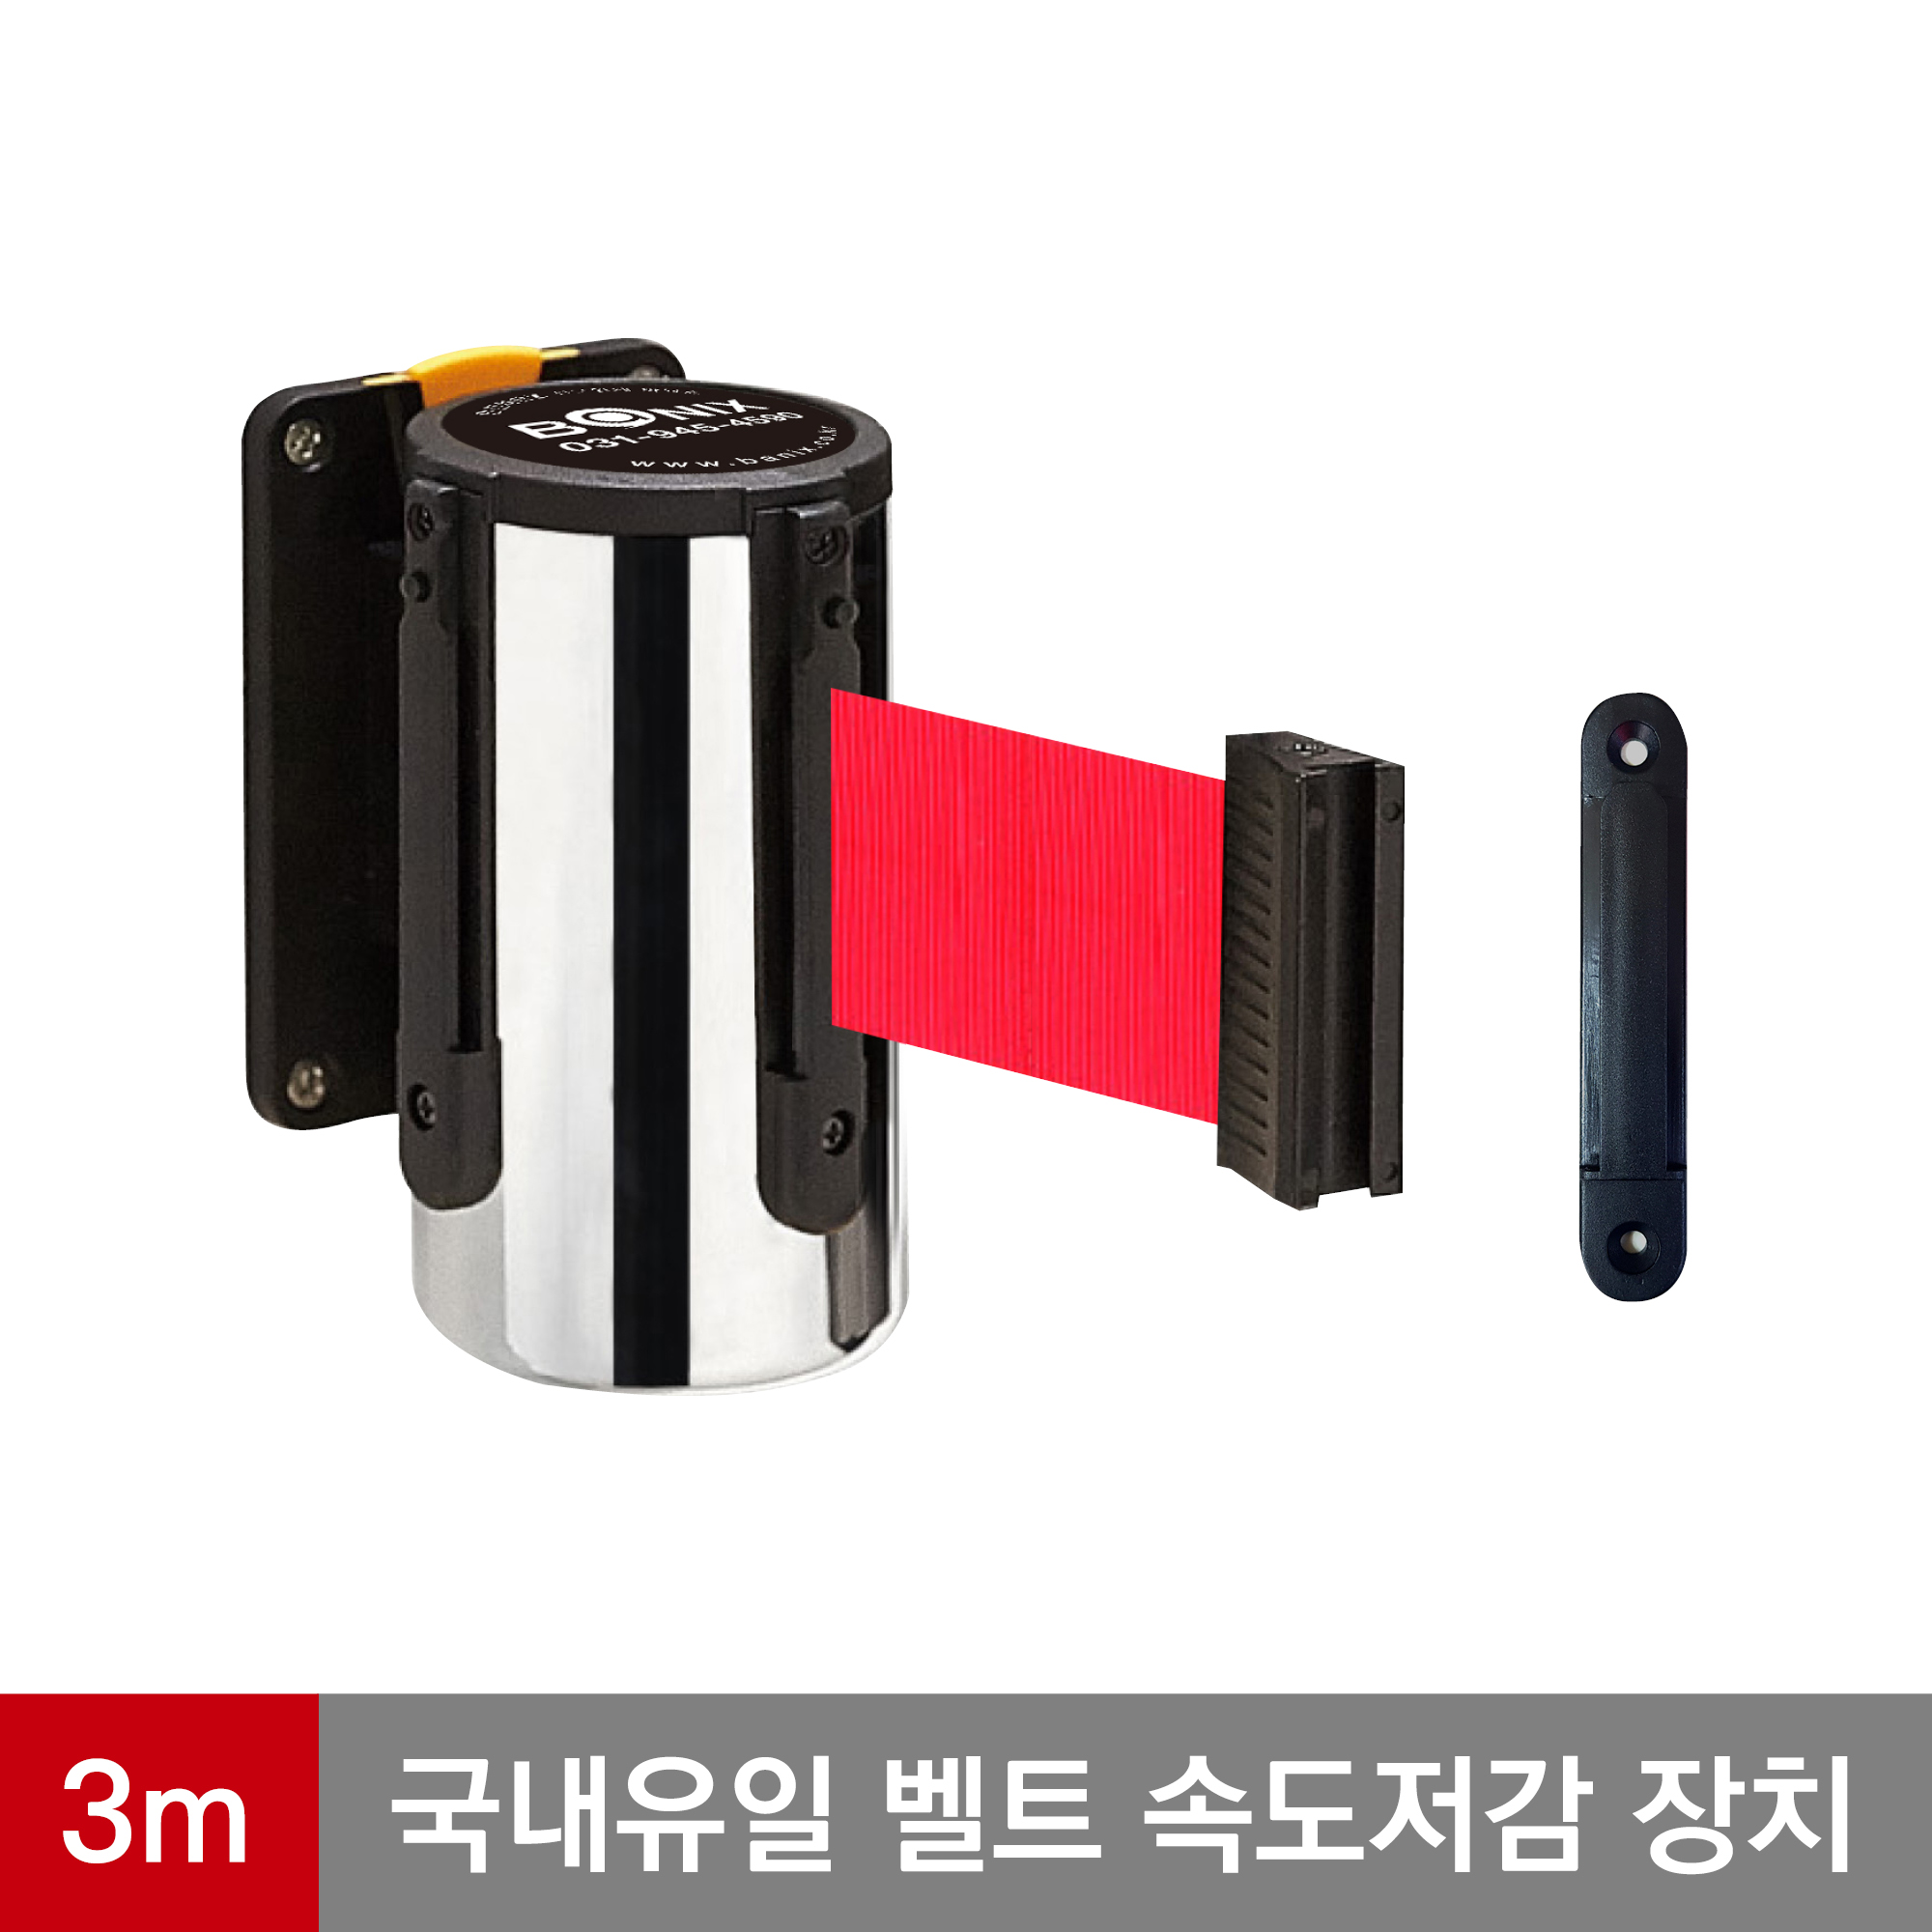 바닉스 벽걸이형 안전차단봉 5cm 3M 프레임(실버) 안전장치 다기능 특허 가장 안전한 바닉스 벽걸이 차단봉 WST300-3m-red